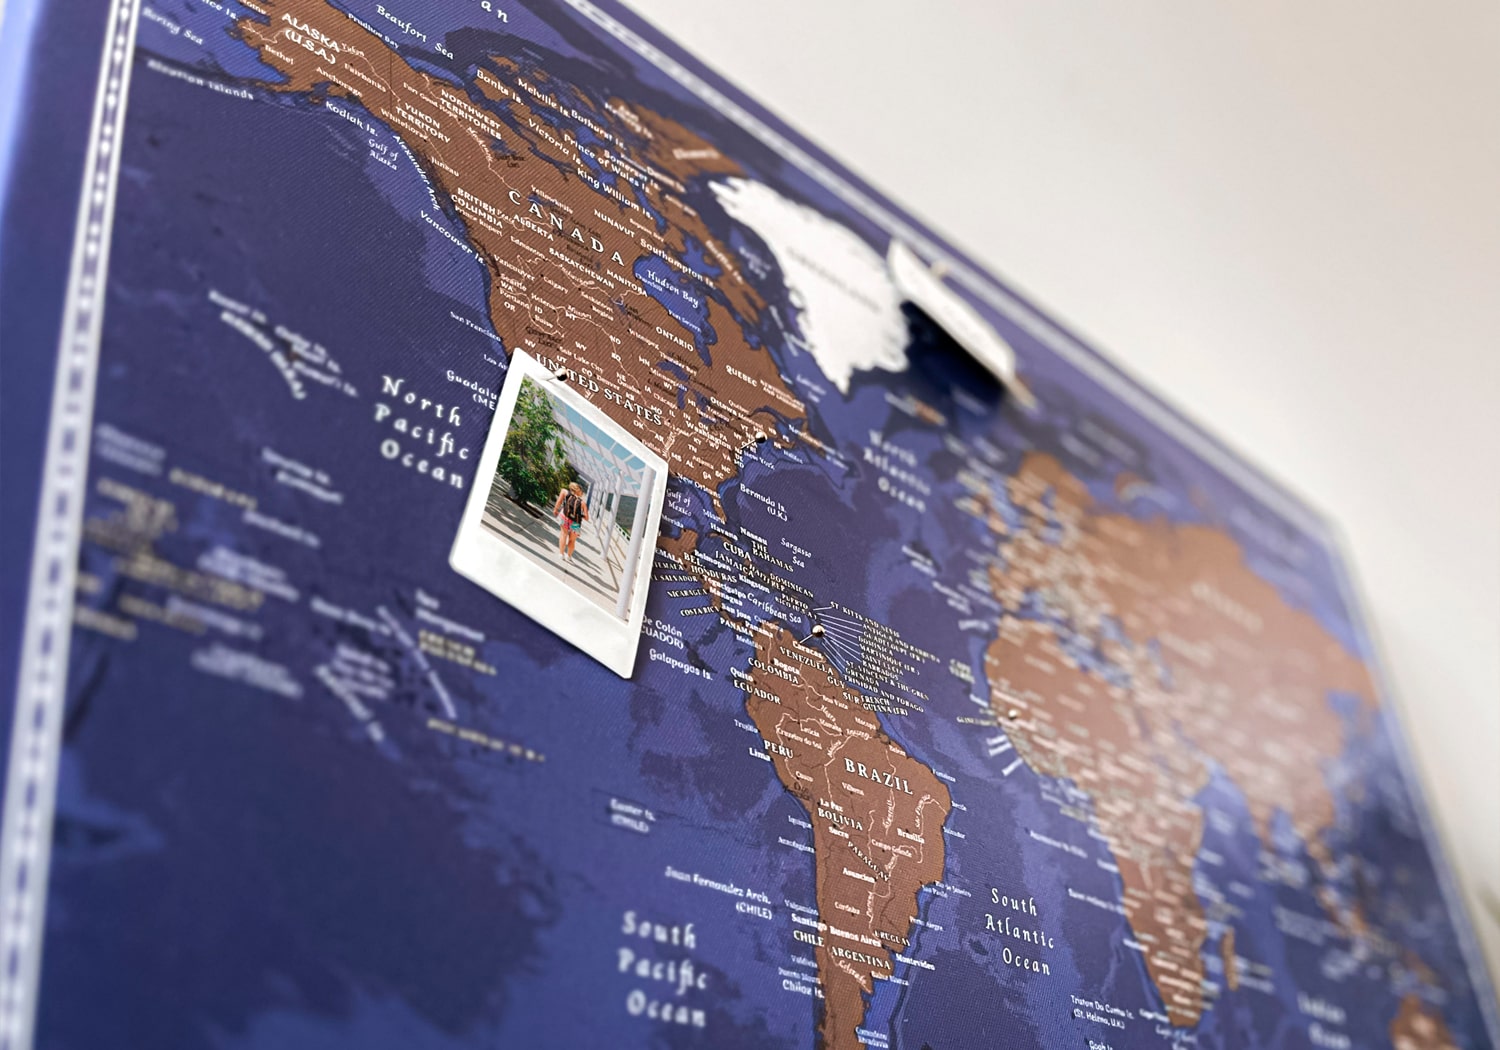 Szczegółowa, ścienna mapa świata w kolorze granatowym z wyeksponowaną fotografią z podróży, wykorzystywana do planowania nowych wypraw i wieszania notatek za pomocą pinezek.